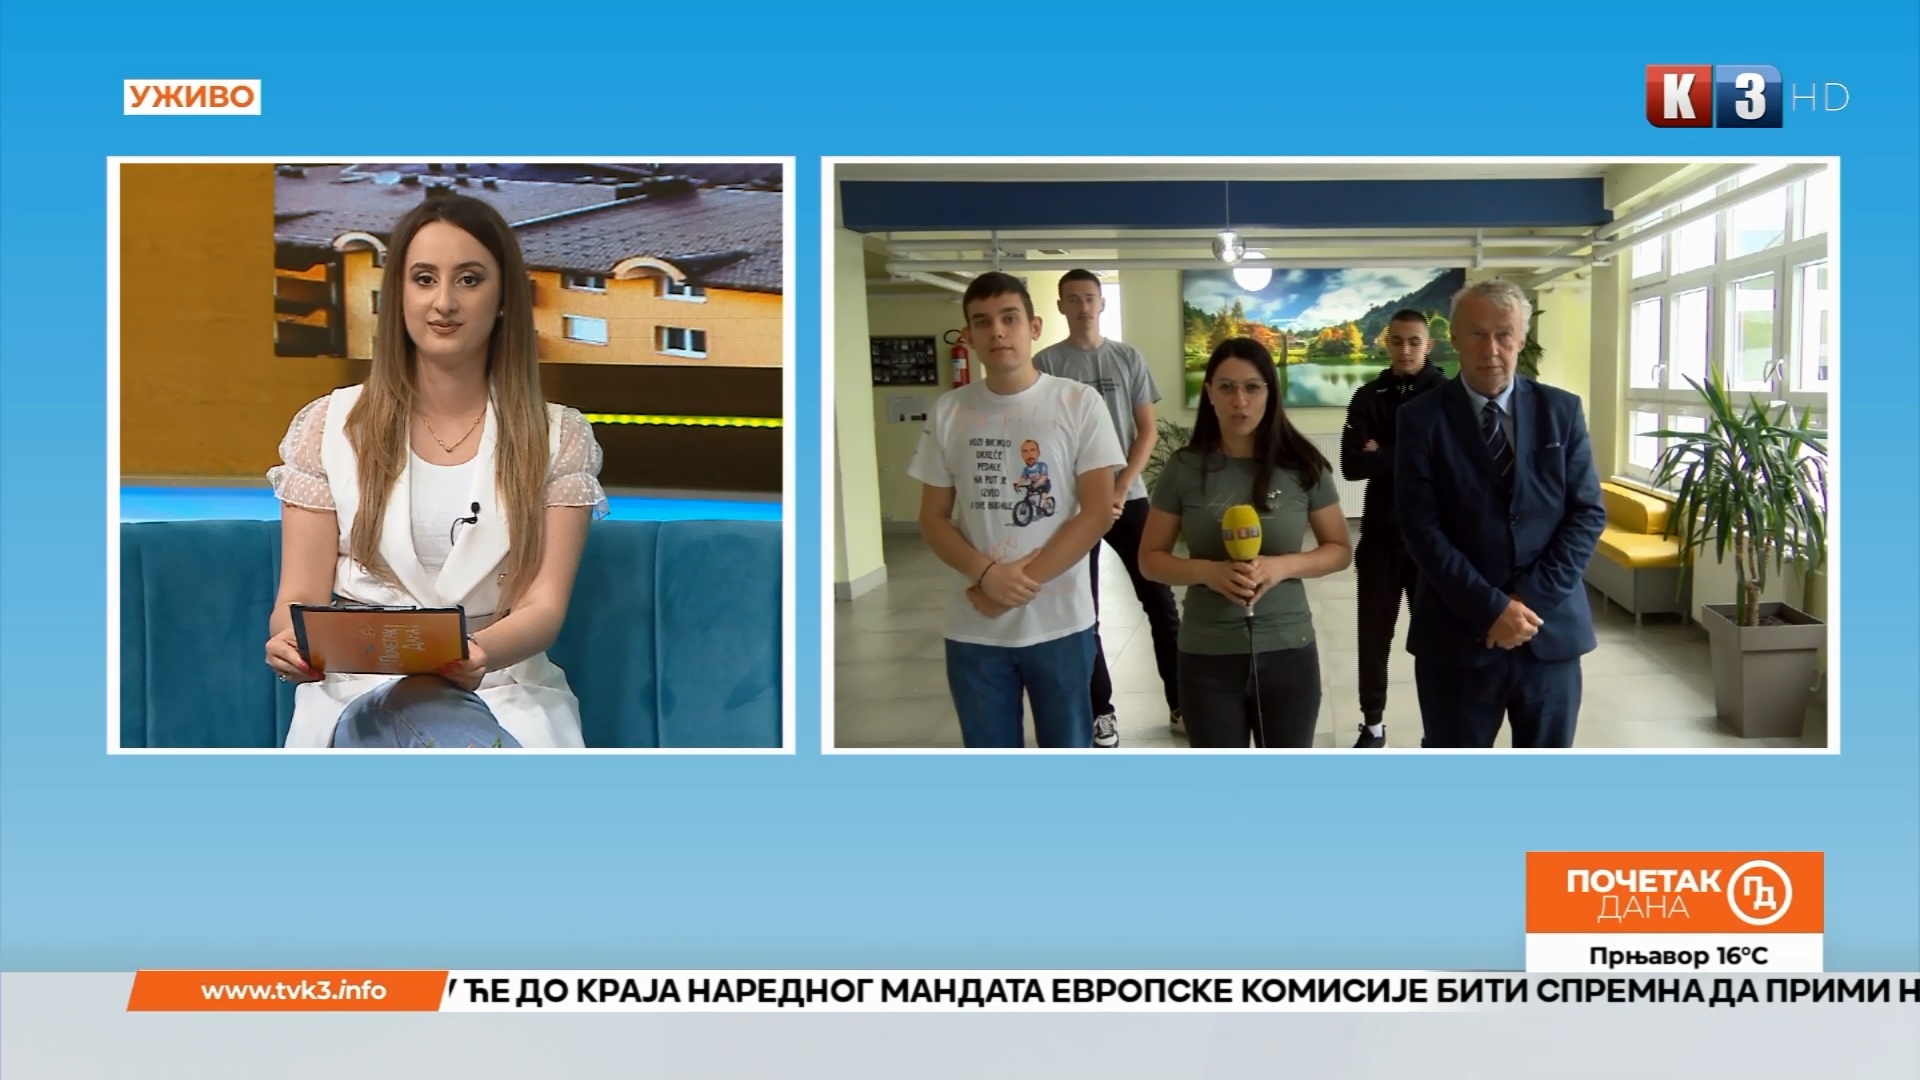 Učenici Srednjoškolskog centra “Jovan Cvijić” iz Modriče nižu uspjehe na takmičenjima – Početak dana TV K3 (VIDEO)